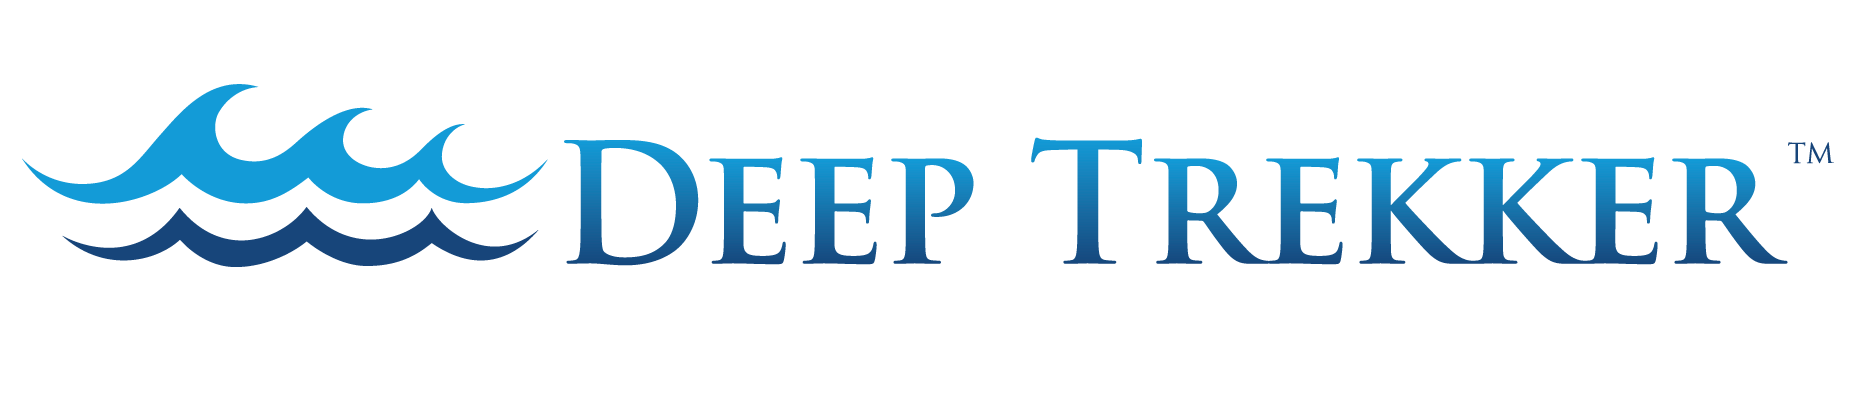 Deep Trekker TM Logo